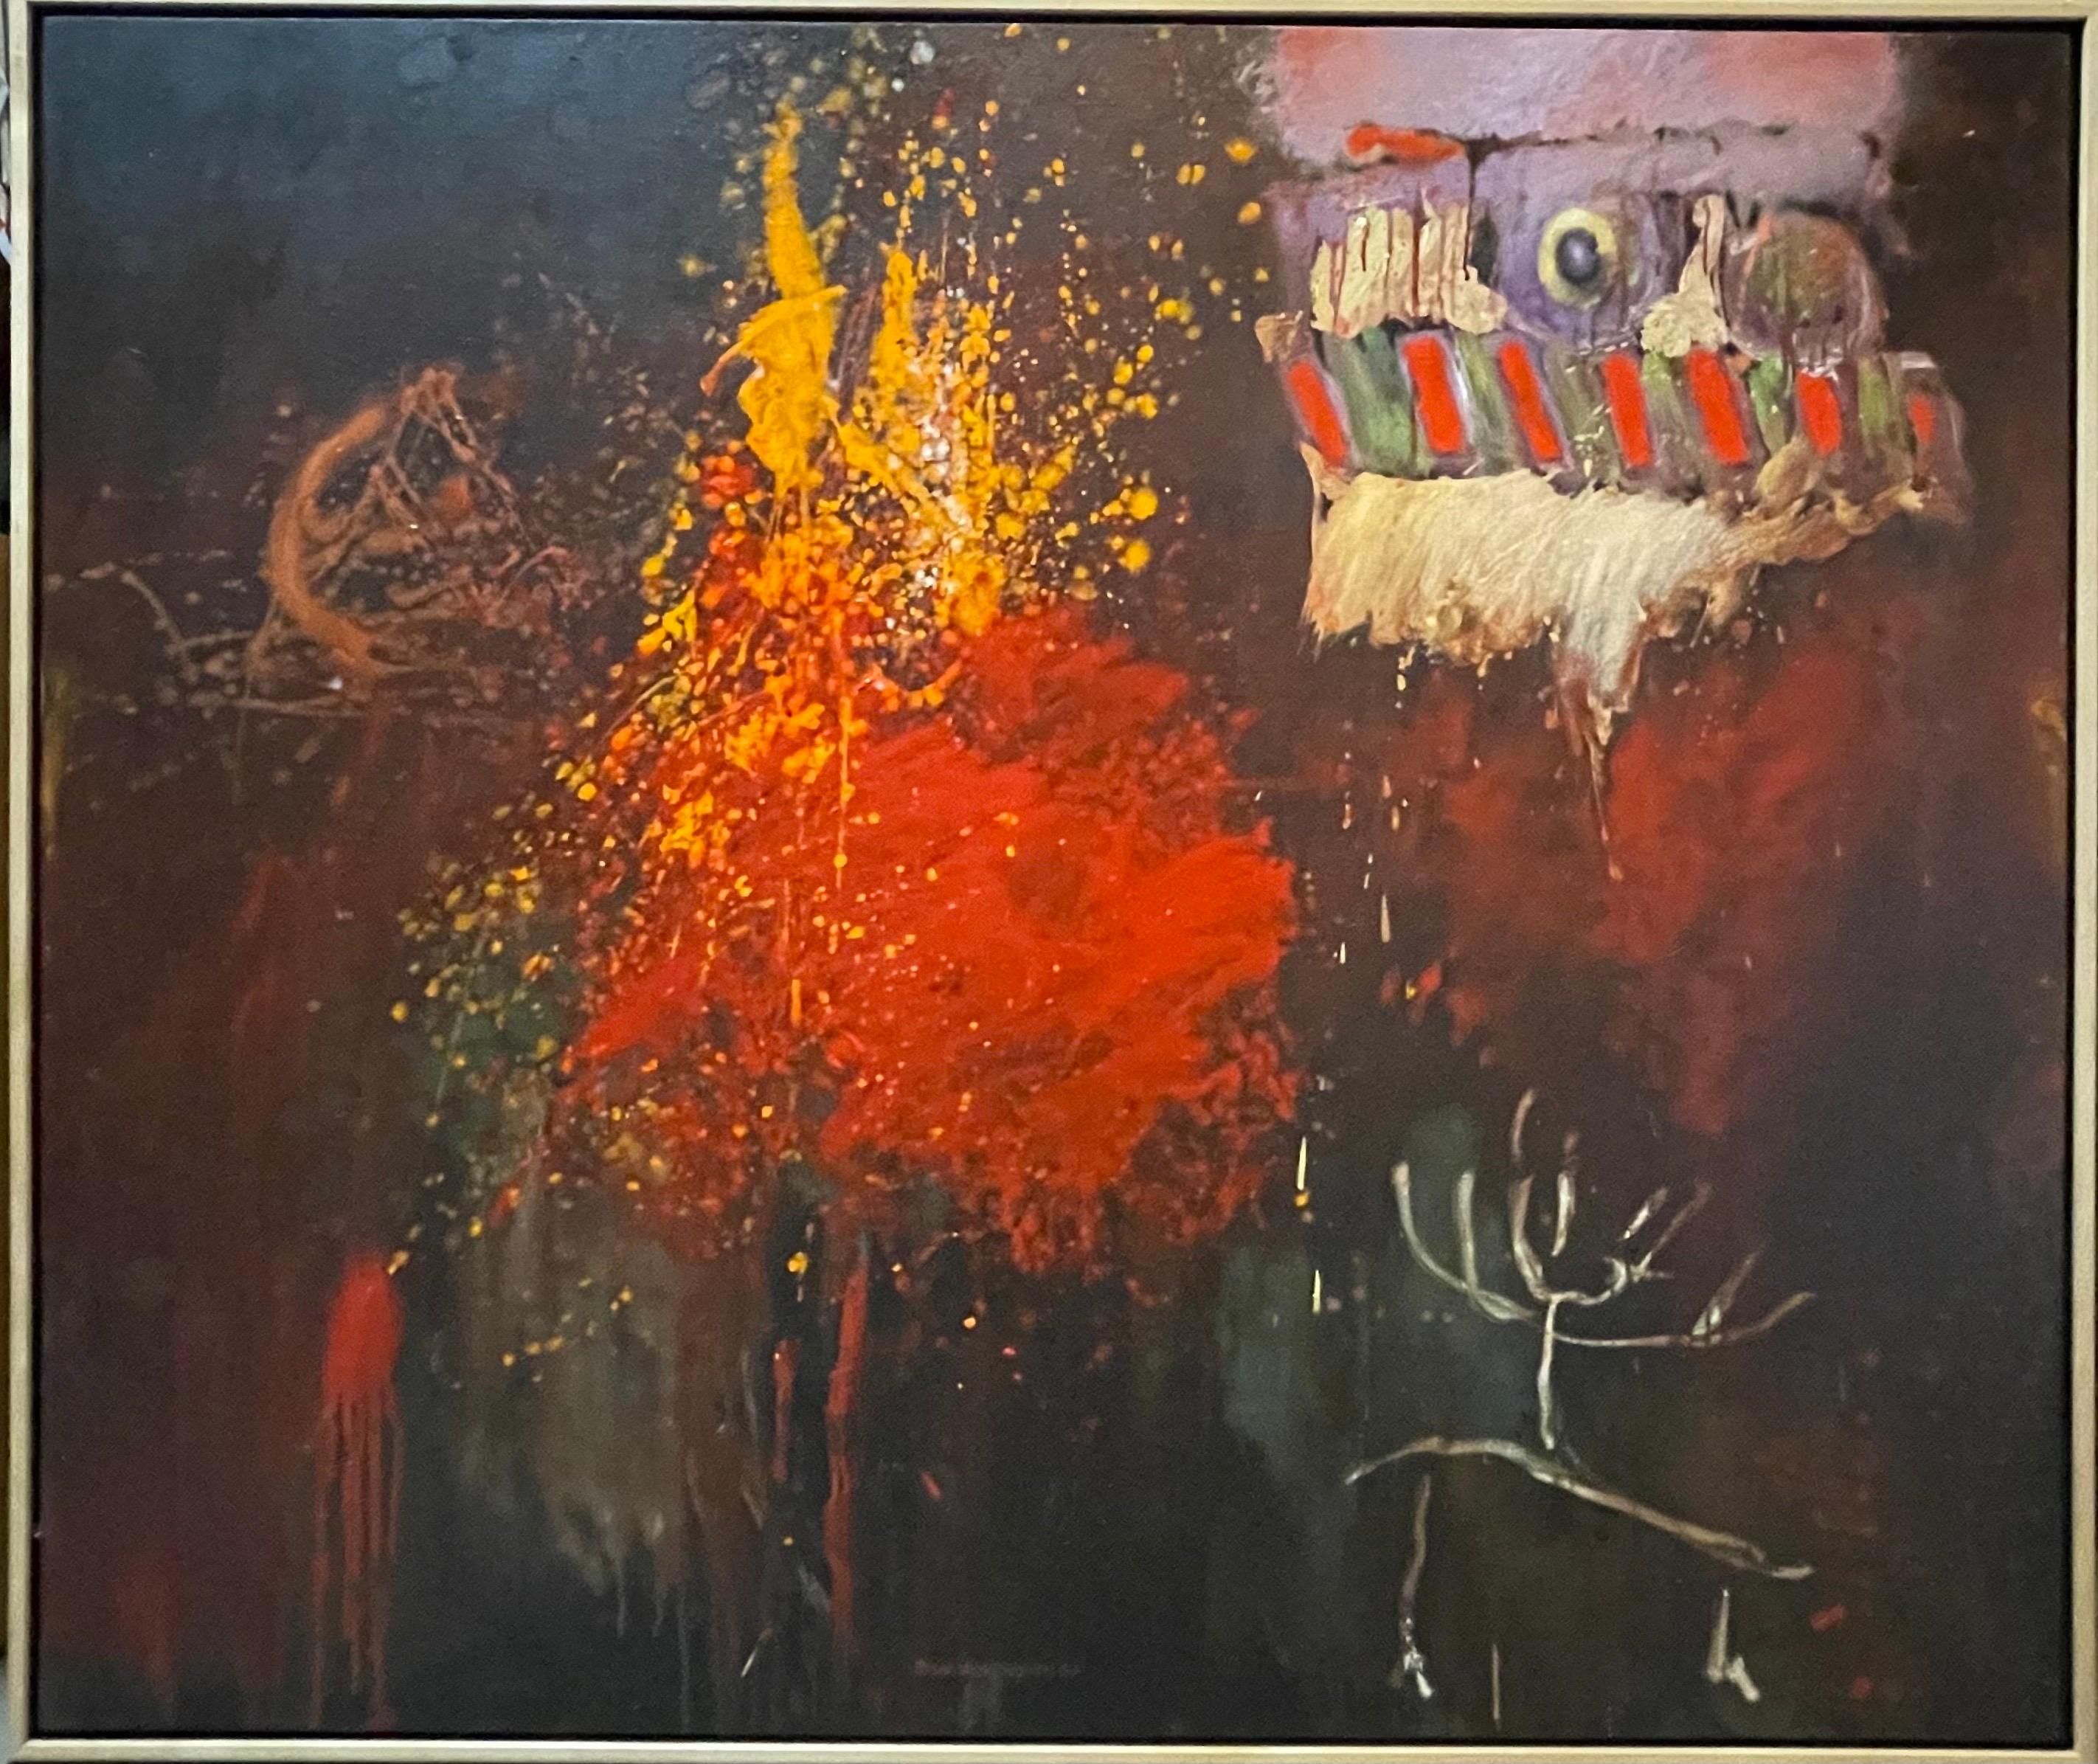 Roger Van Ouytsel (Américain, né en 1941) 
Titre : "Les choses que j'ai aimées chez Larry Wise," 
1987. Peinture à l'huile sur toile, signée et datée. Encadré. 
Provenance : Exposé à la galerie Allan Stone, New York, 1988. 
Dimensions : 44'' x 52'',